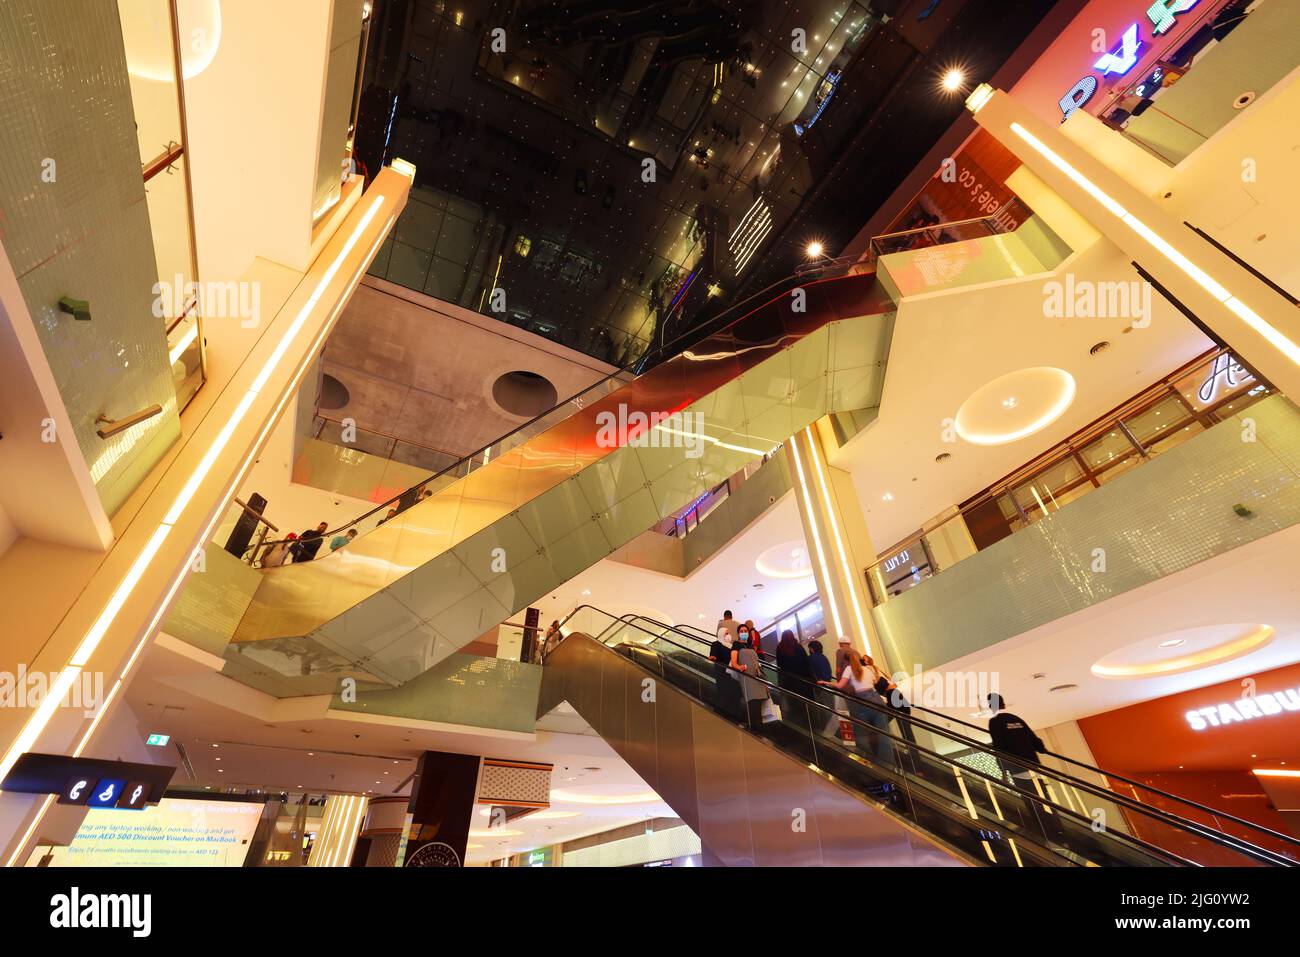 Rolltreppen, Dubai Mall, Mode, atemberaubend, Einkaufszentrum, Umwerfende Architektur u. Luxus, Fashion Geschäften mit Spaß und Freude beim Shoppen Foto Stock